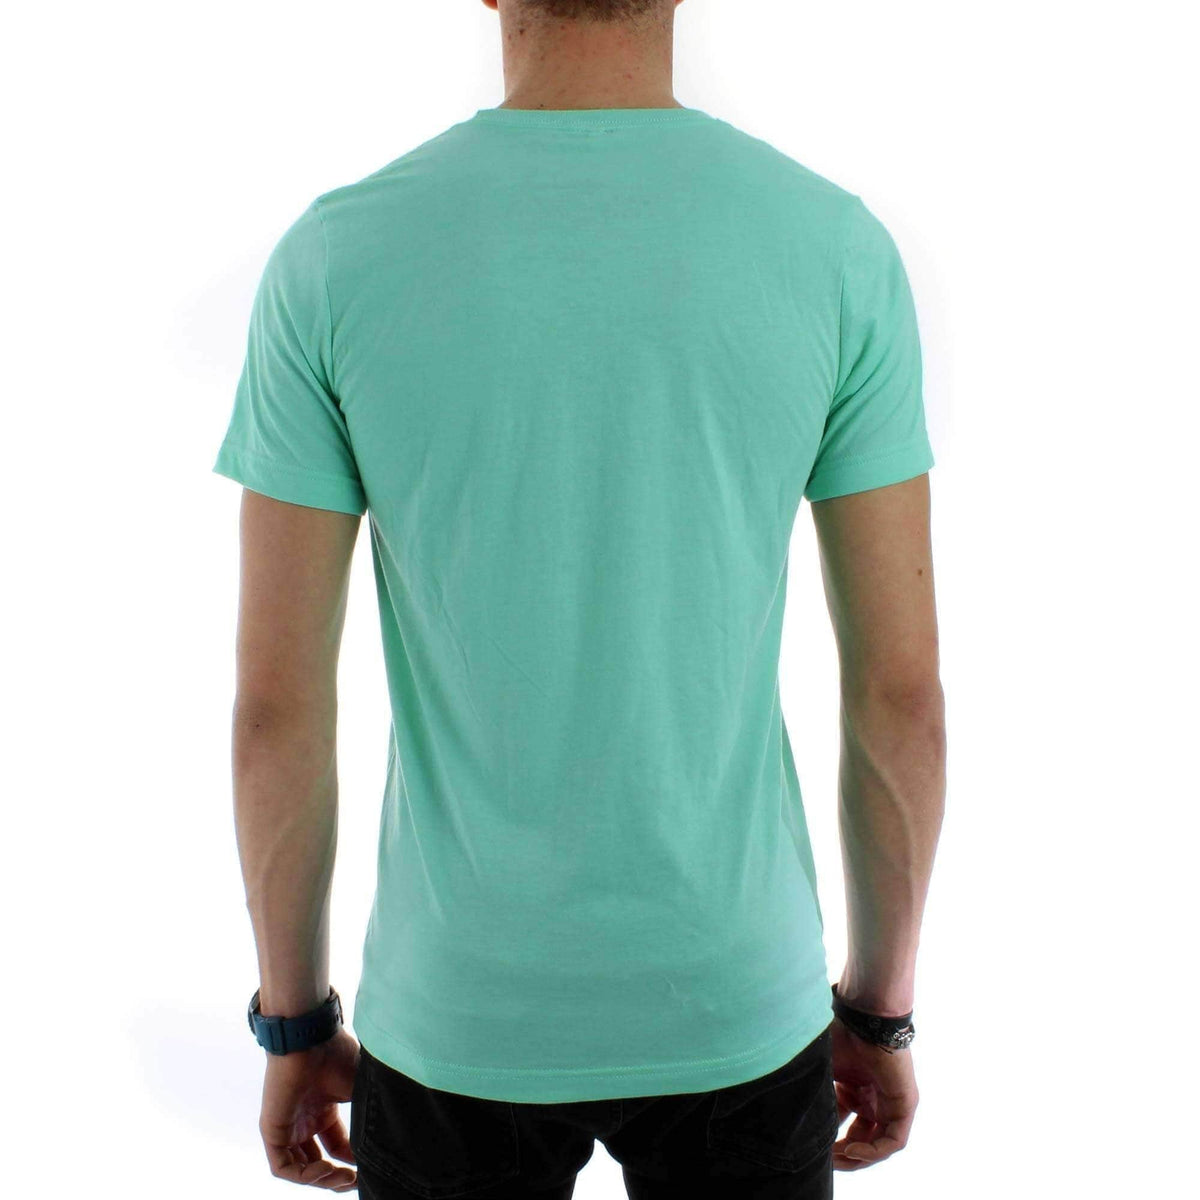 Yakwax Horizon of Stoke T-Shirt in Mint - Mens Graphic T-Shirt by Yakwax